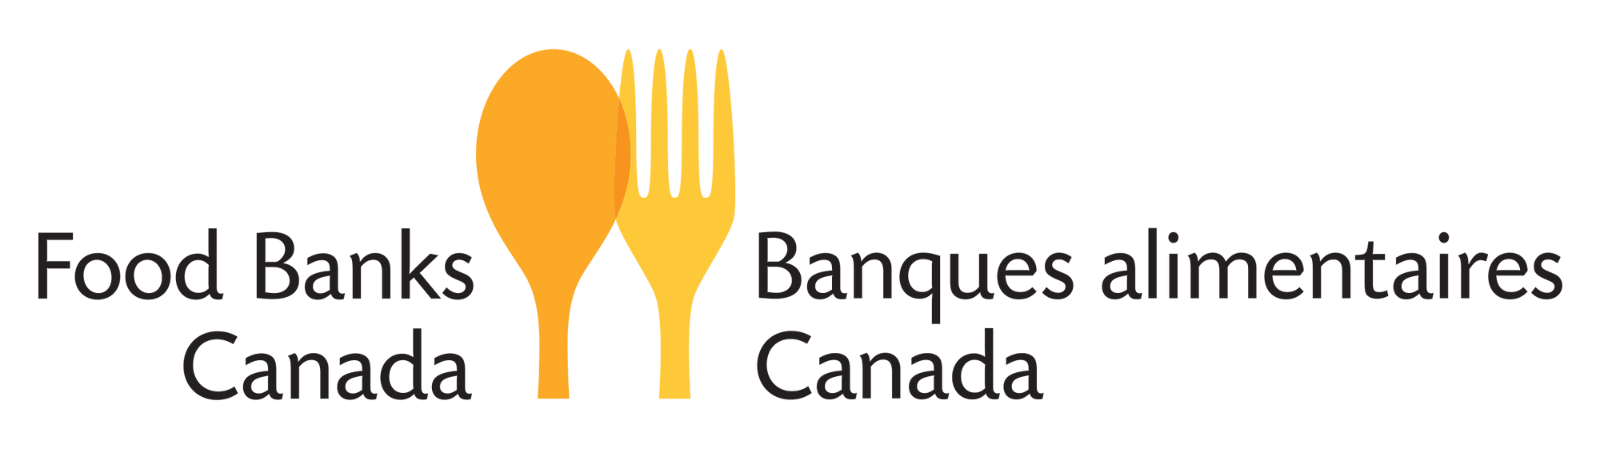 Food Bank Canada Logo